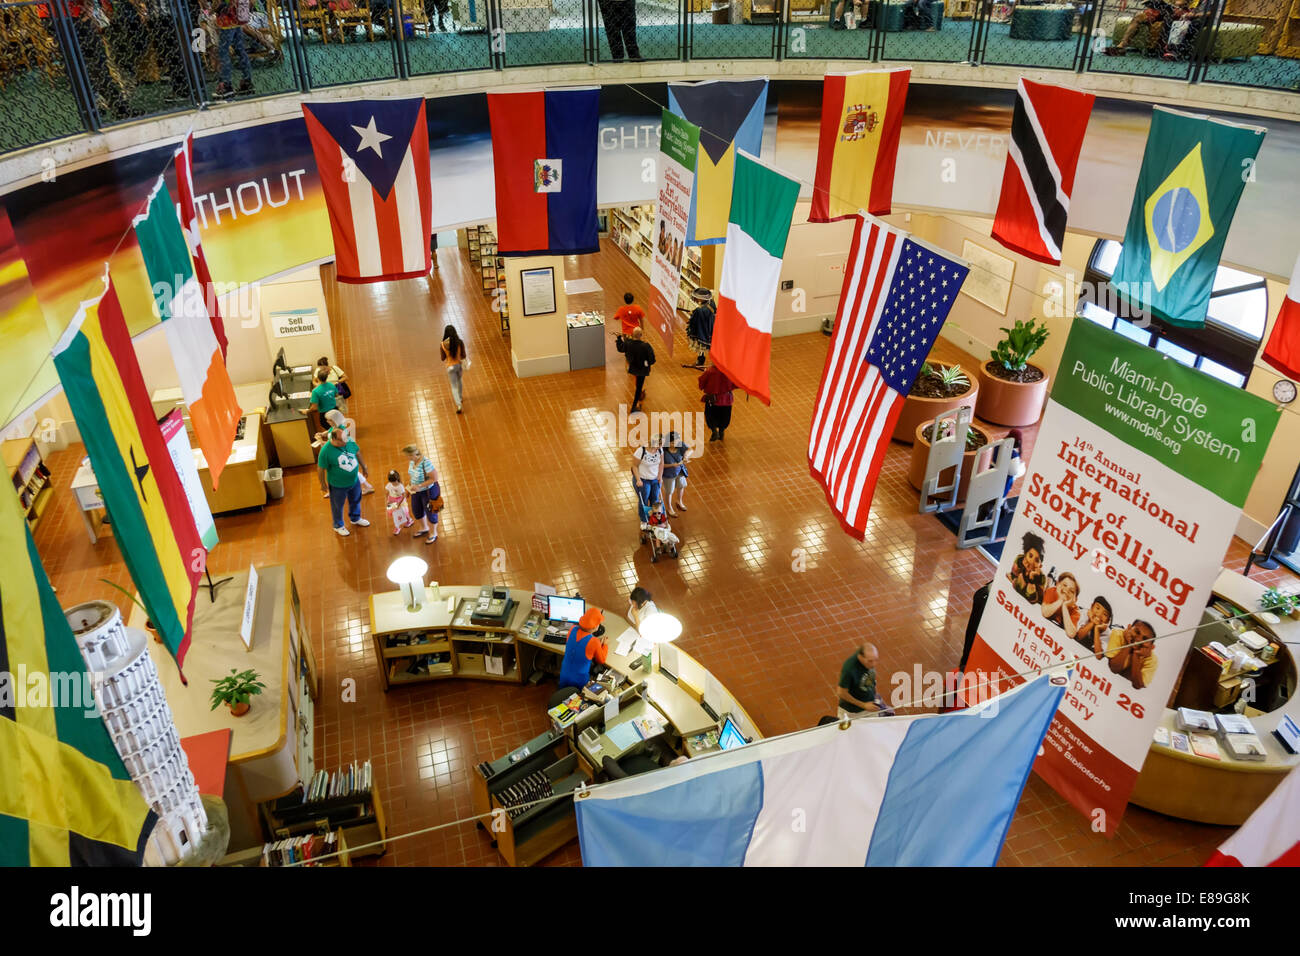 Miami Florida, Miami-Dade Public Library, jährliches internationales Festival der Kunst des Erzählens, freies Interieur, Flaggen, FL140420088 Stockfoto